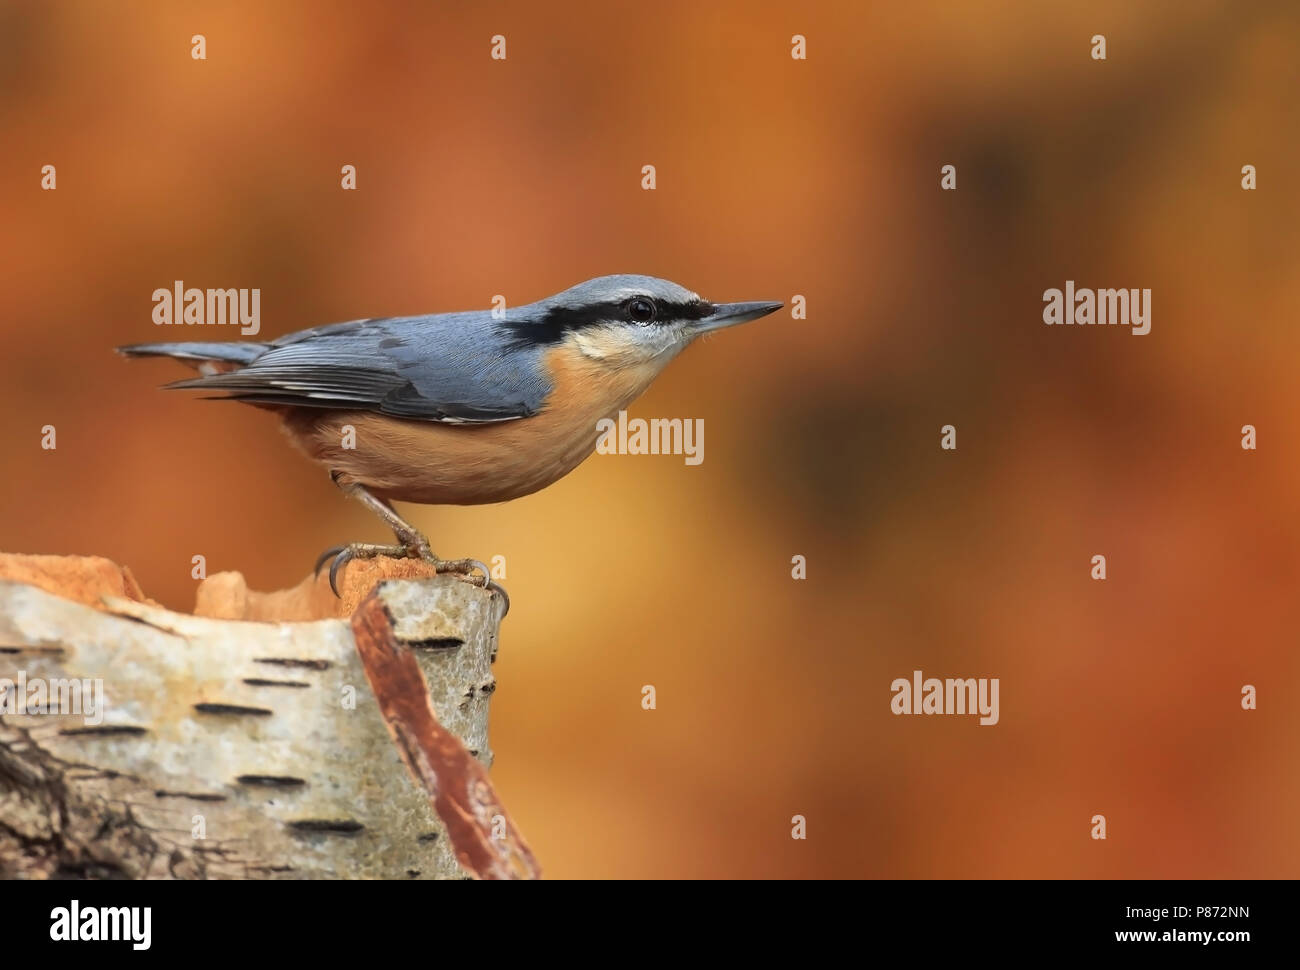 Bird image from European bird Stock Photo